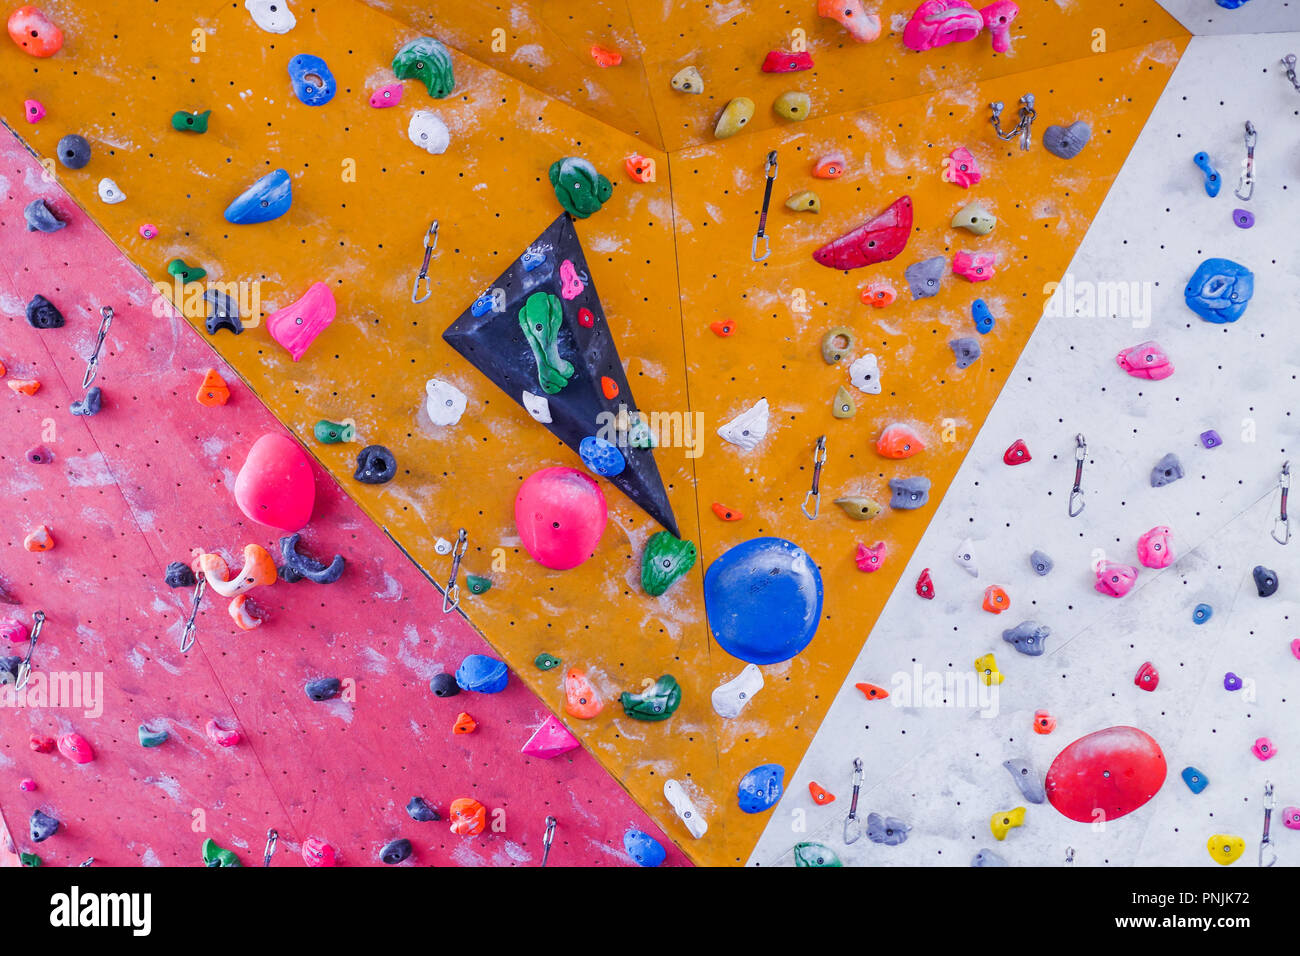 Indoor Kletterwand, staps Sport höhere Schule, Villeurbanne, Frankreich Stockfoto